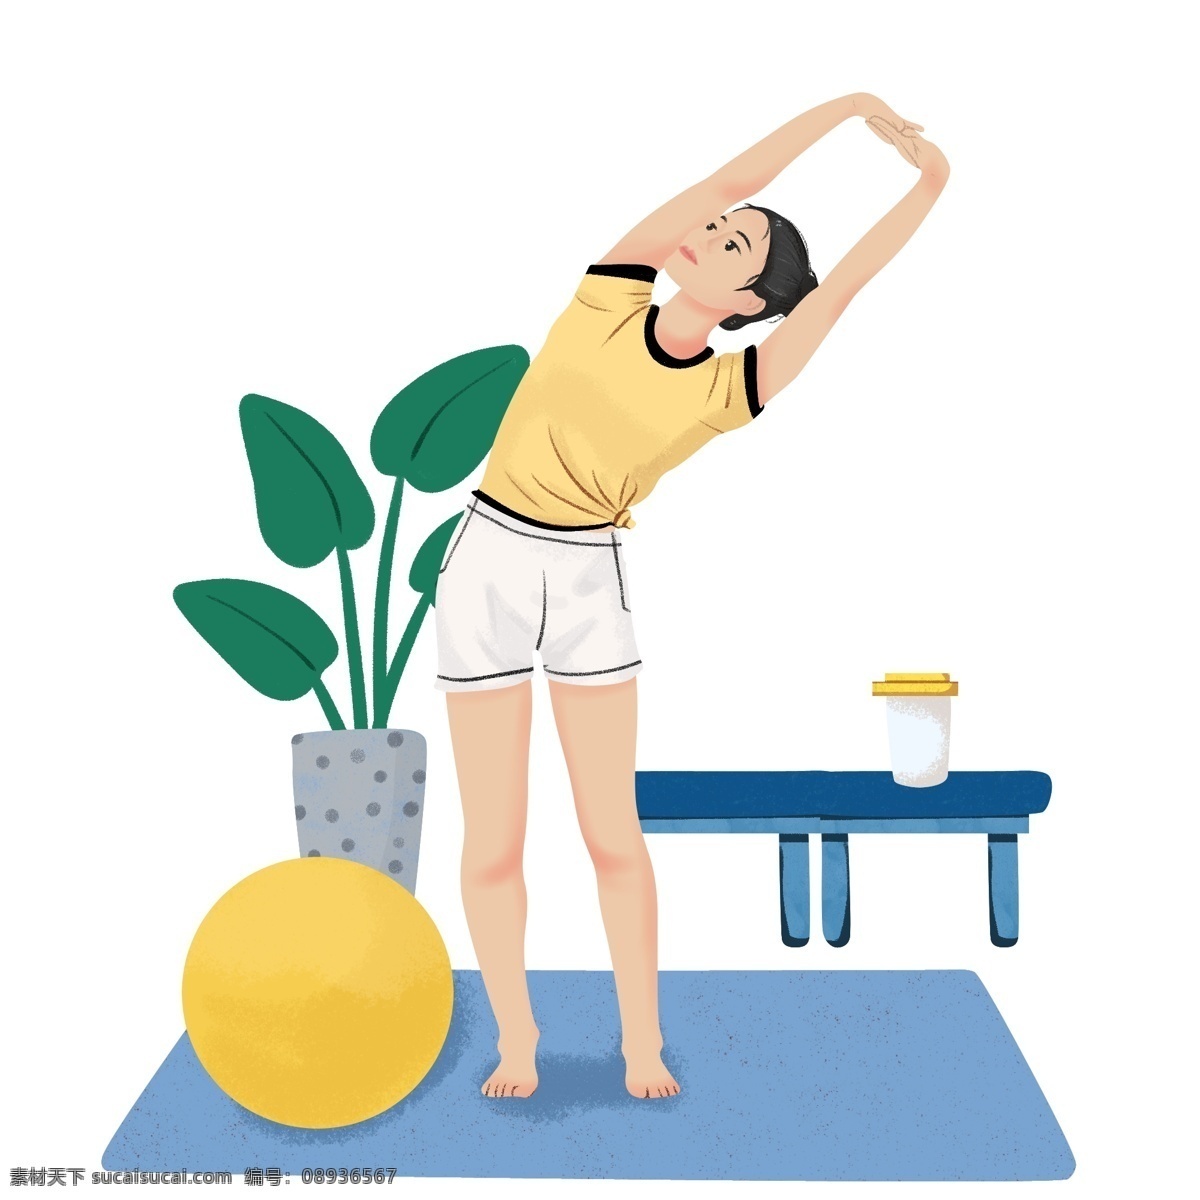 练习 瑜伽 小女孩 瑜伽健身插画 练习瑜伽女孩 瑜伽健身 漂亮的小女孩 黄色的圆球 蓝色的垫子